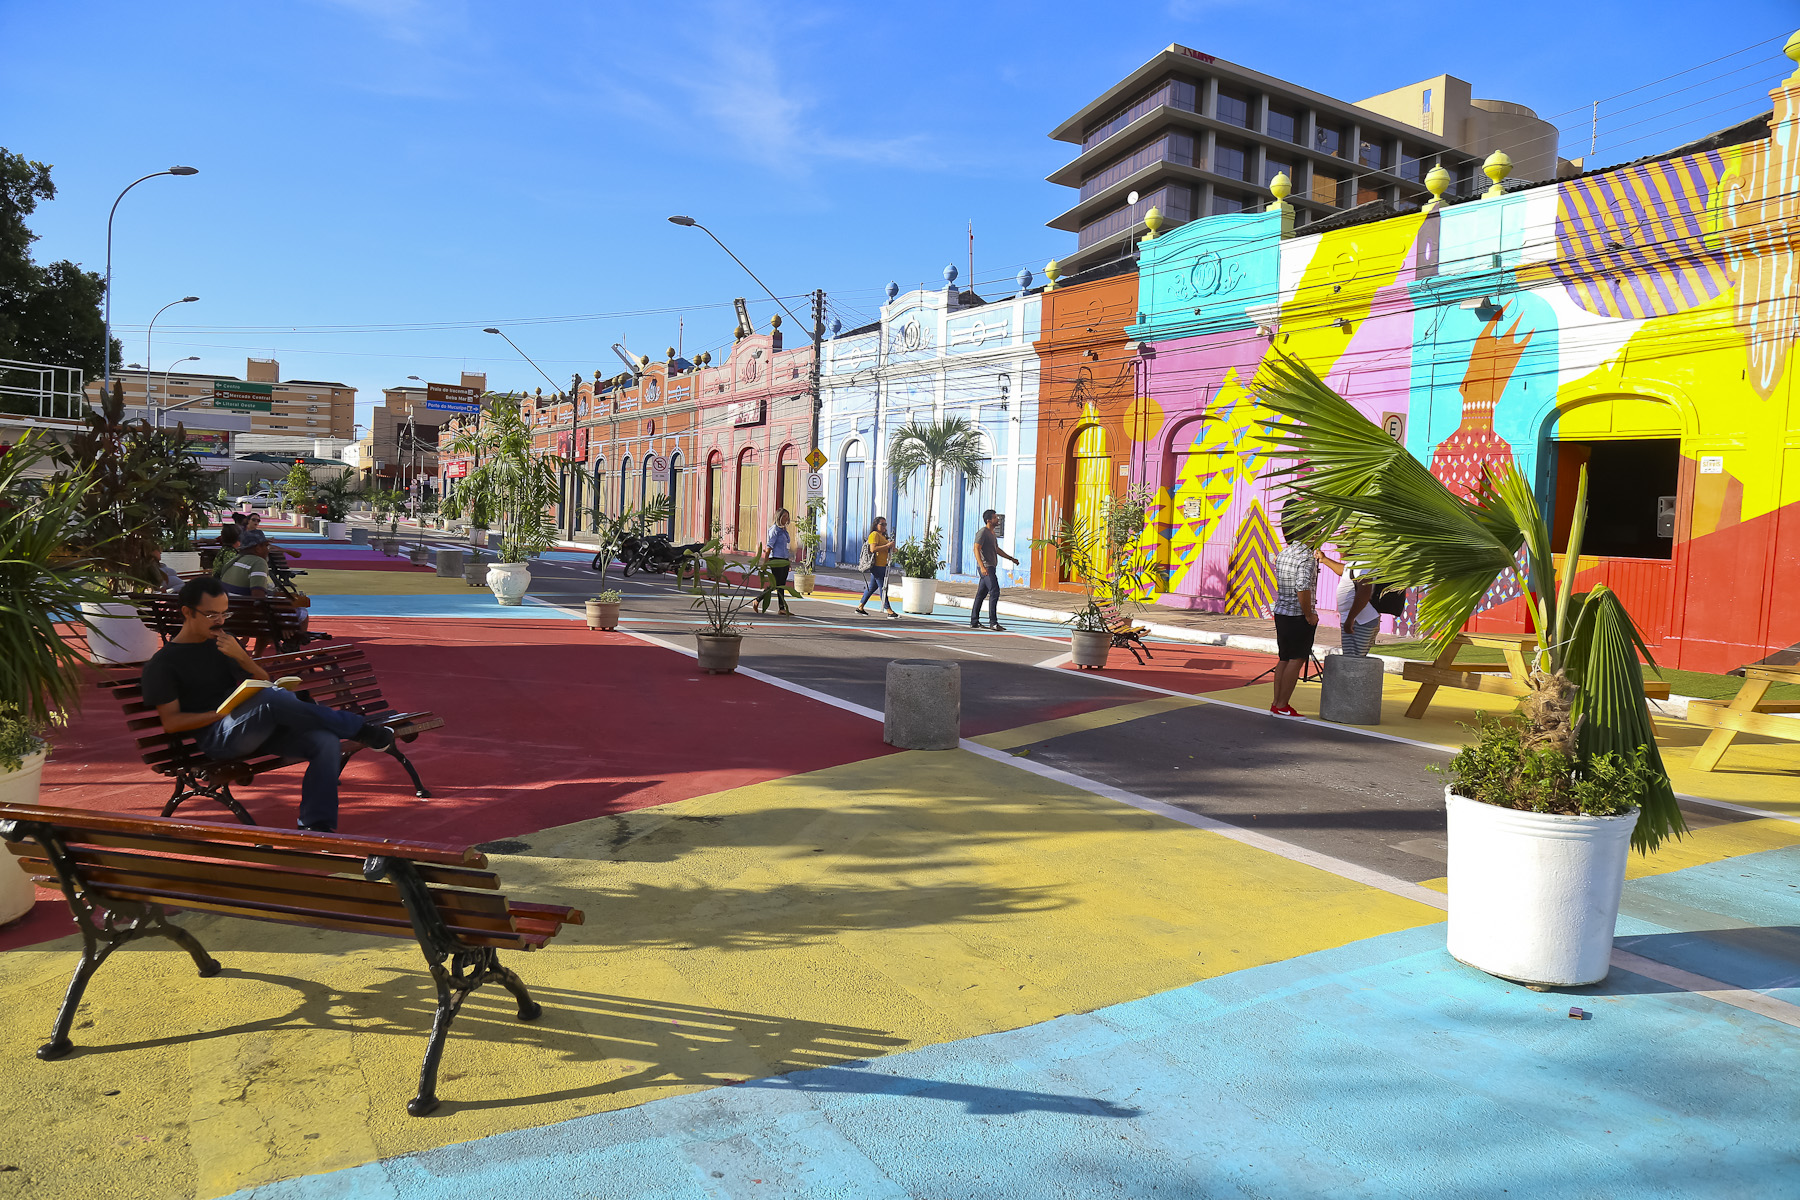 Ruas em frente ao Centro Dragão do mar com asfalto e imóveis pintados e coloridos, bancos de praça e pessoas sentadas